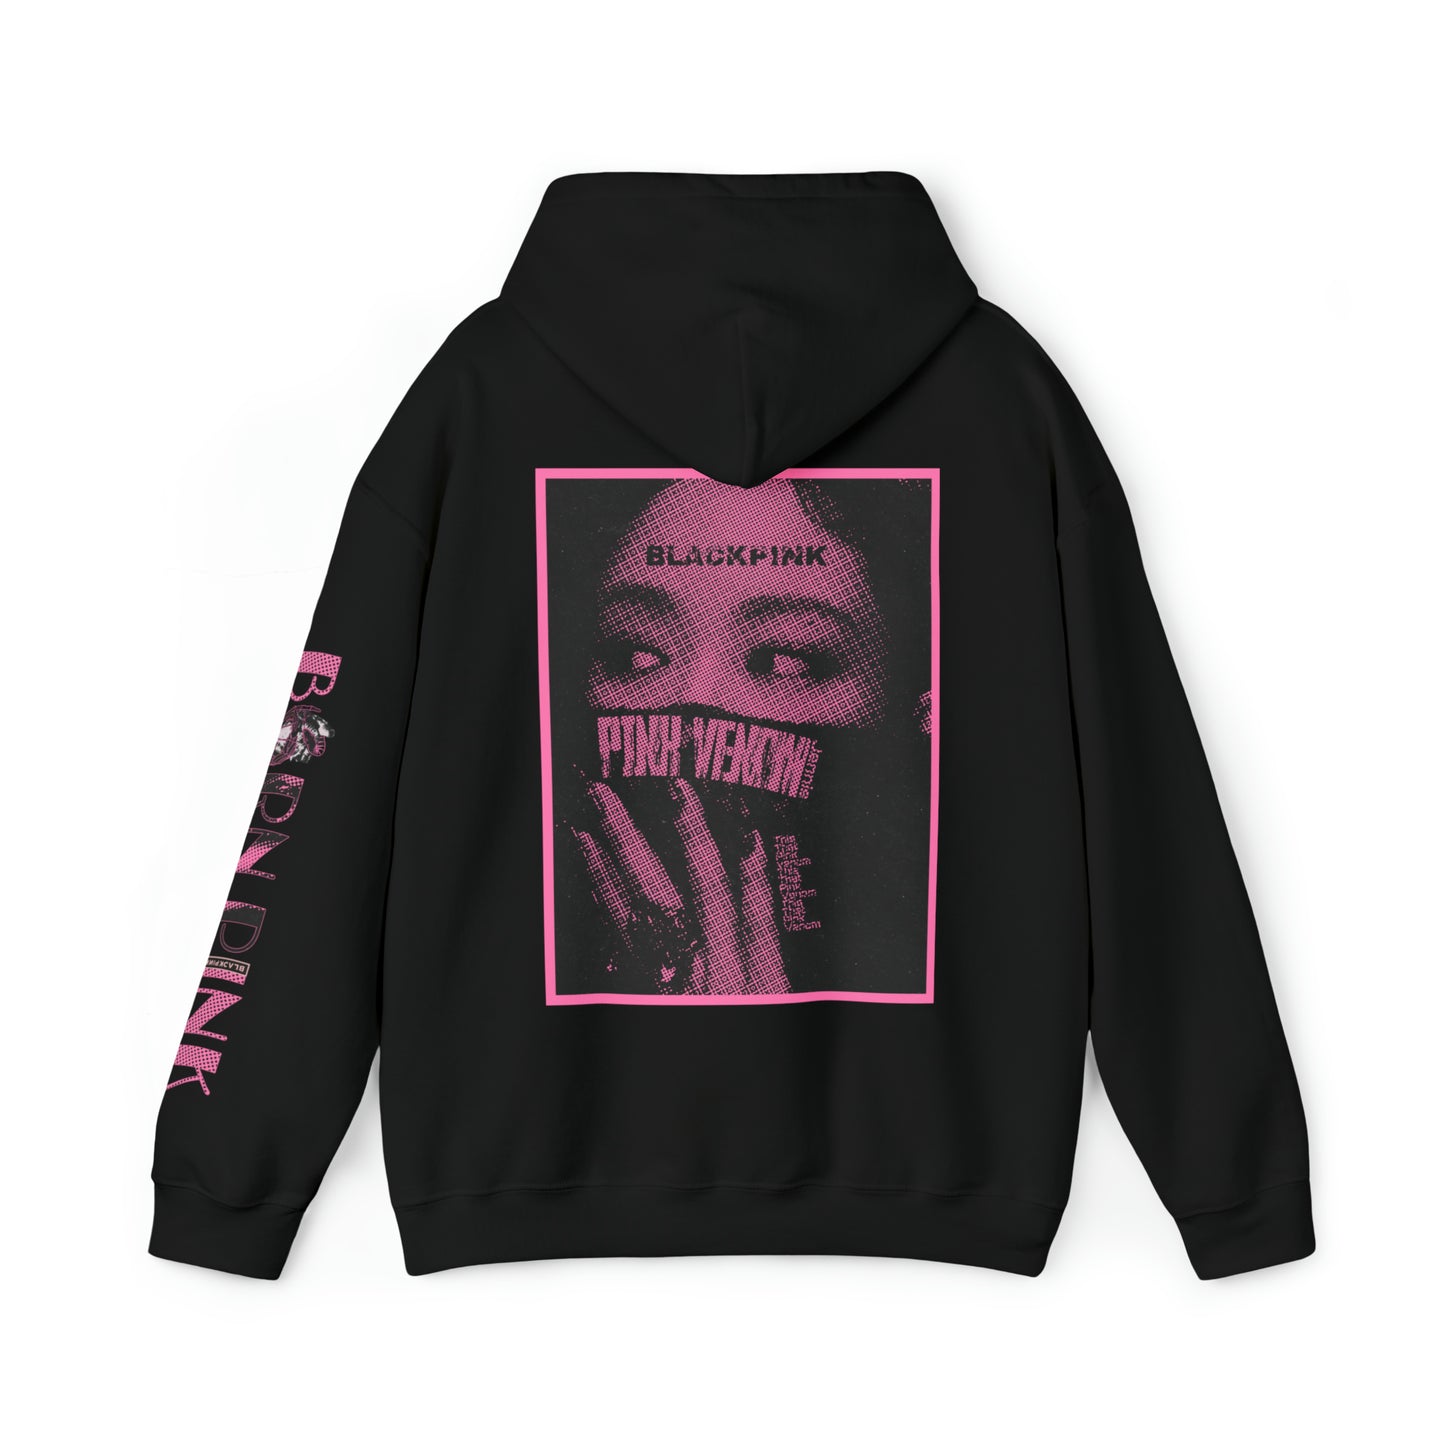 " Pink Venom Jennie" Unisex Heavy Blend™ Hooded Sweatshirt